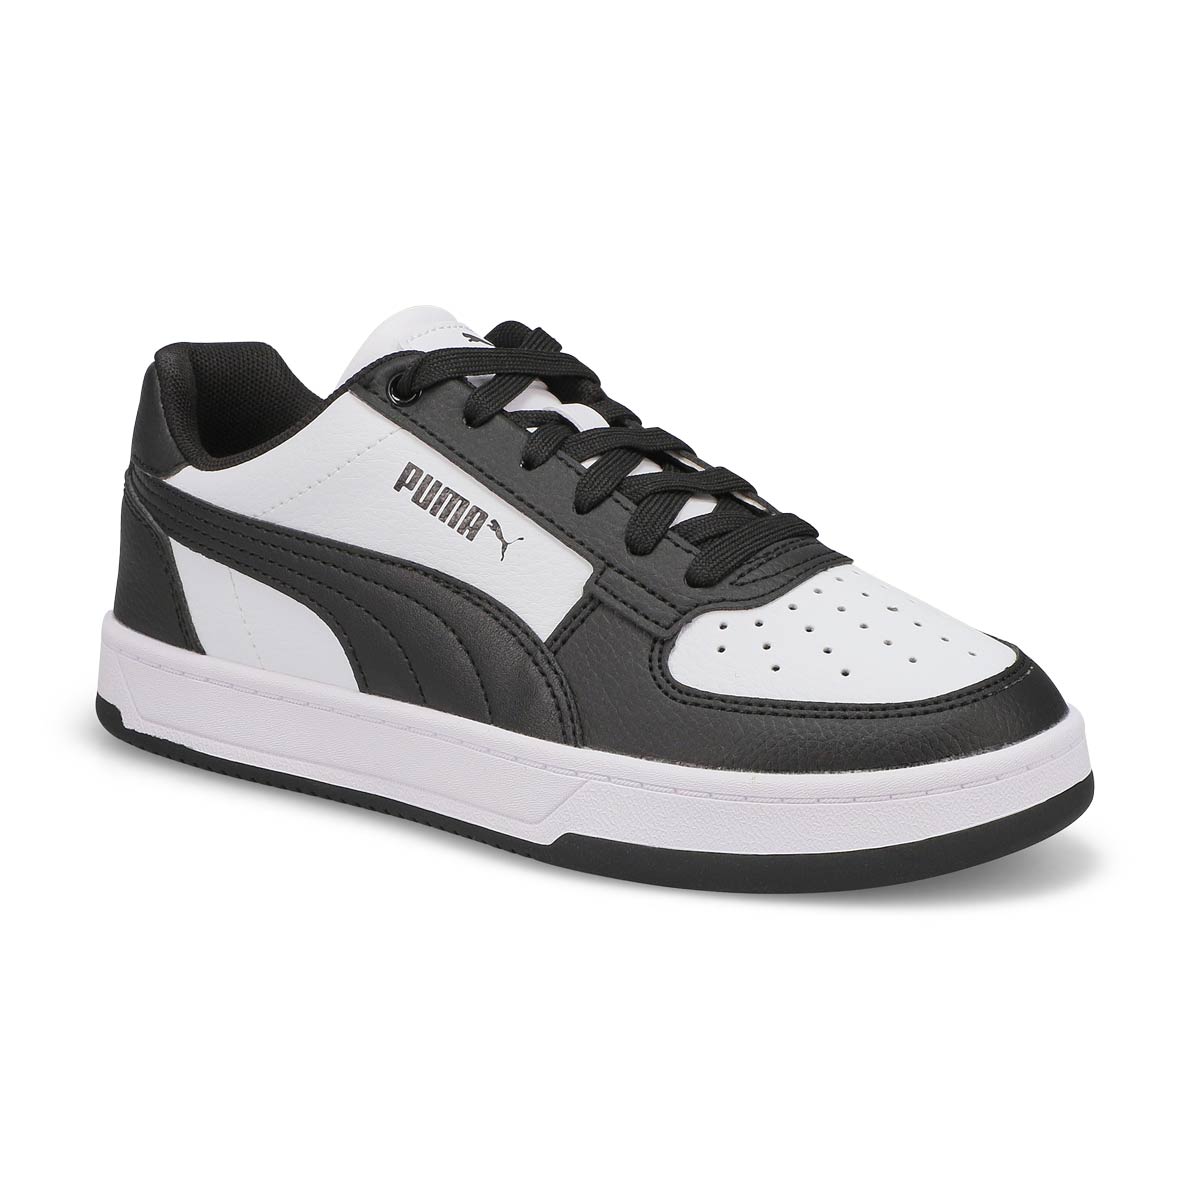 Kids' Caven 2.0 Jr Lace Up Sneaker - Black/White